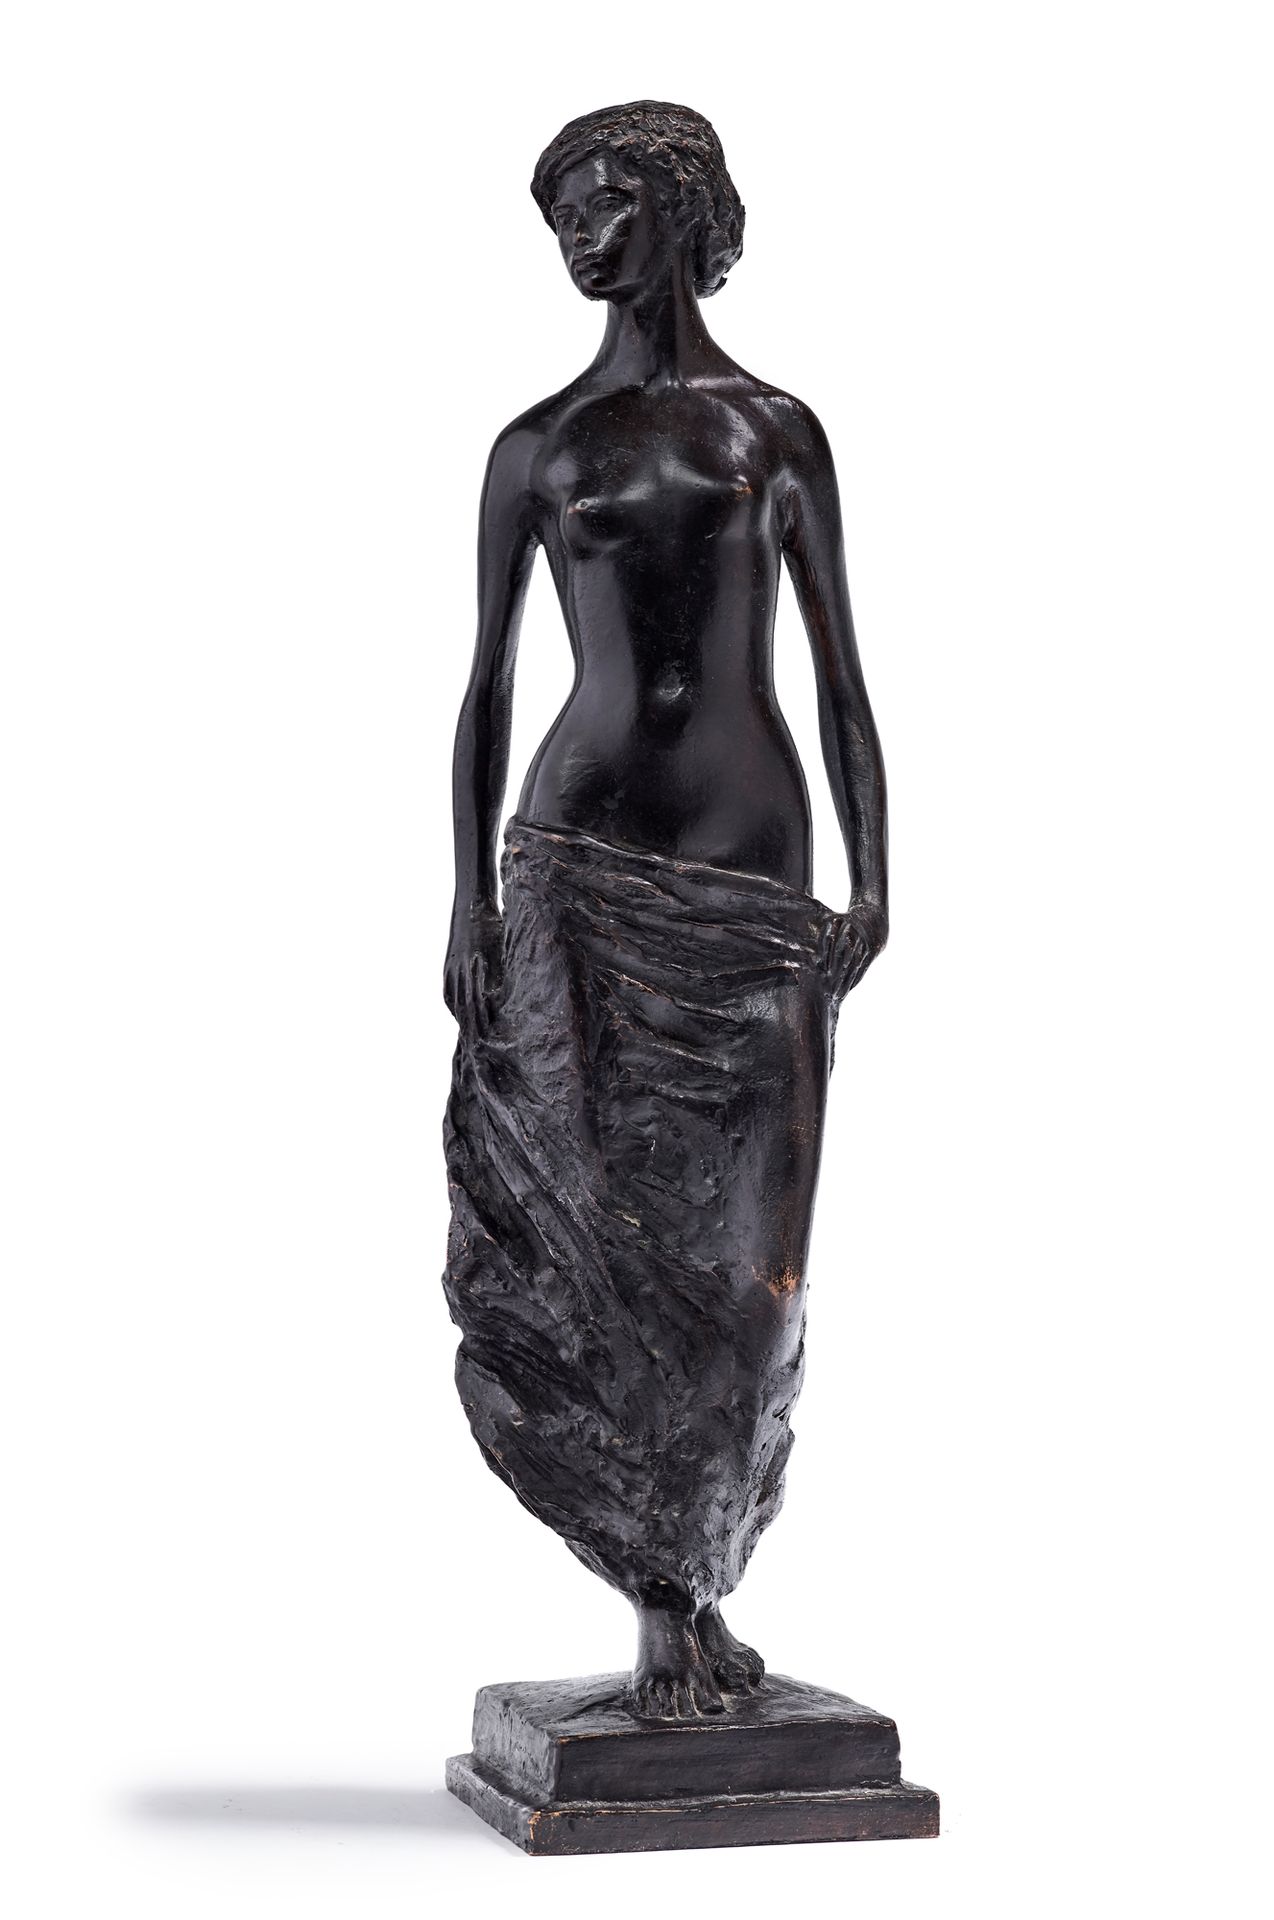 Michel SAINT OLIVE (1917-1993) 
垂头丧气的女人
棕色铜制垂头丧气的女人雕塑
签名为 "SAINT OLIVE" EA 模型创作于&hellip;